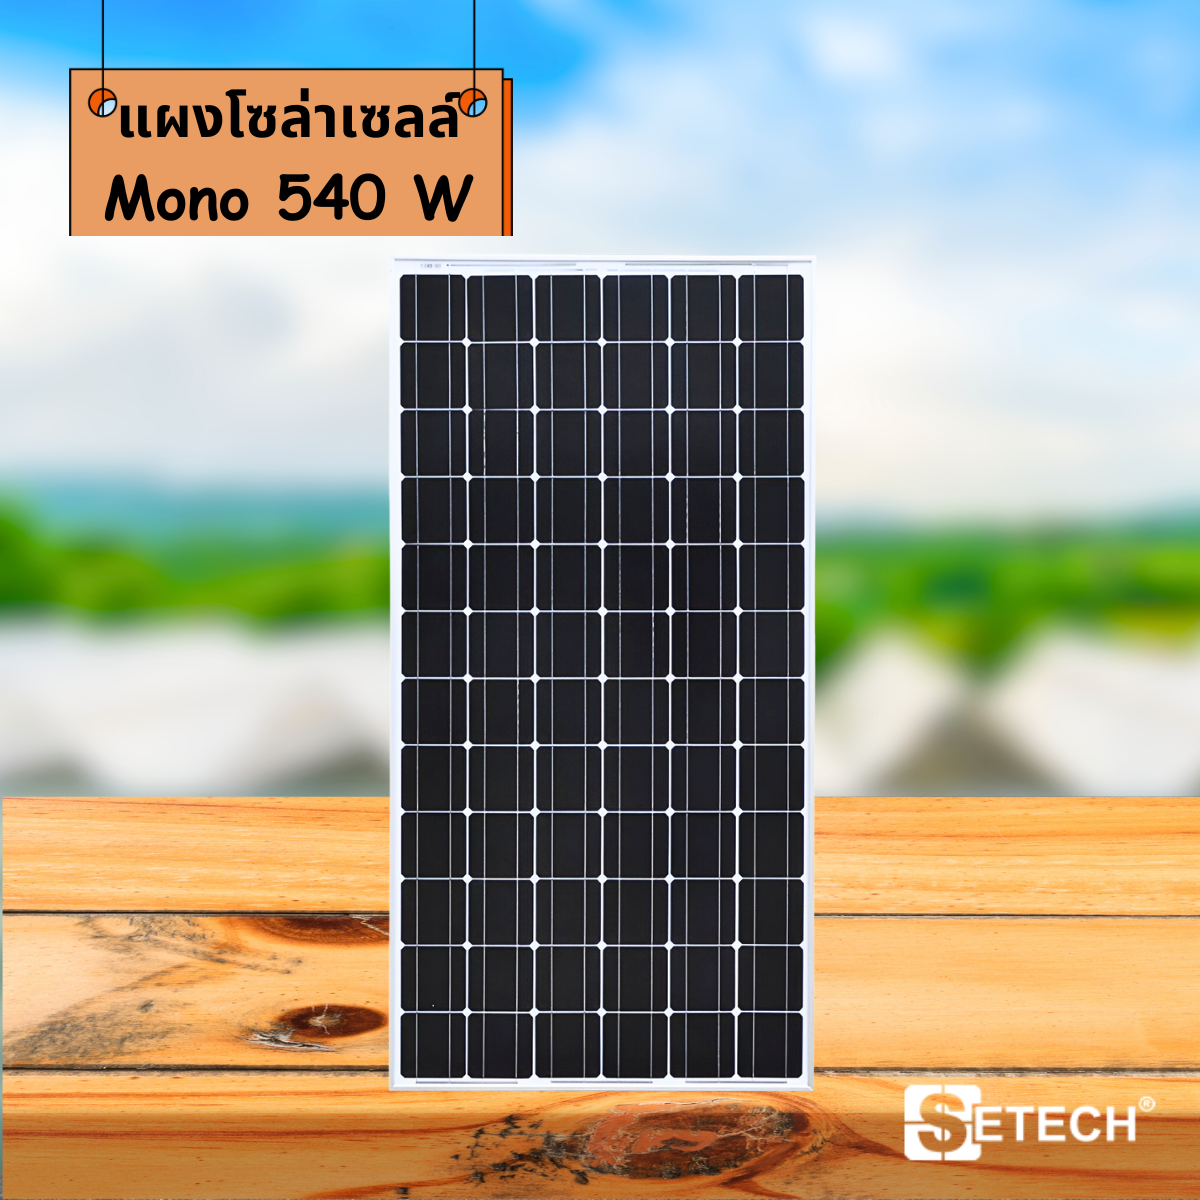 Solar panels Model Mono 540 W SETECH-SC-04 SC-04